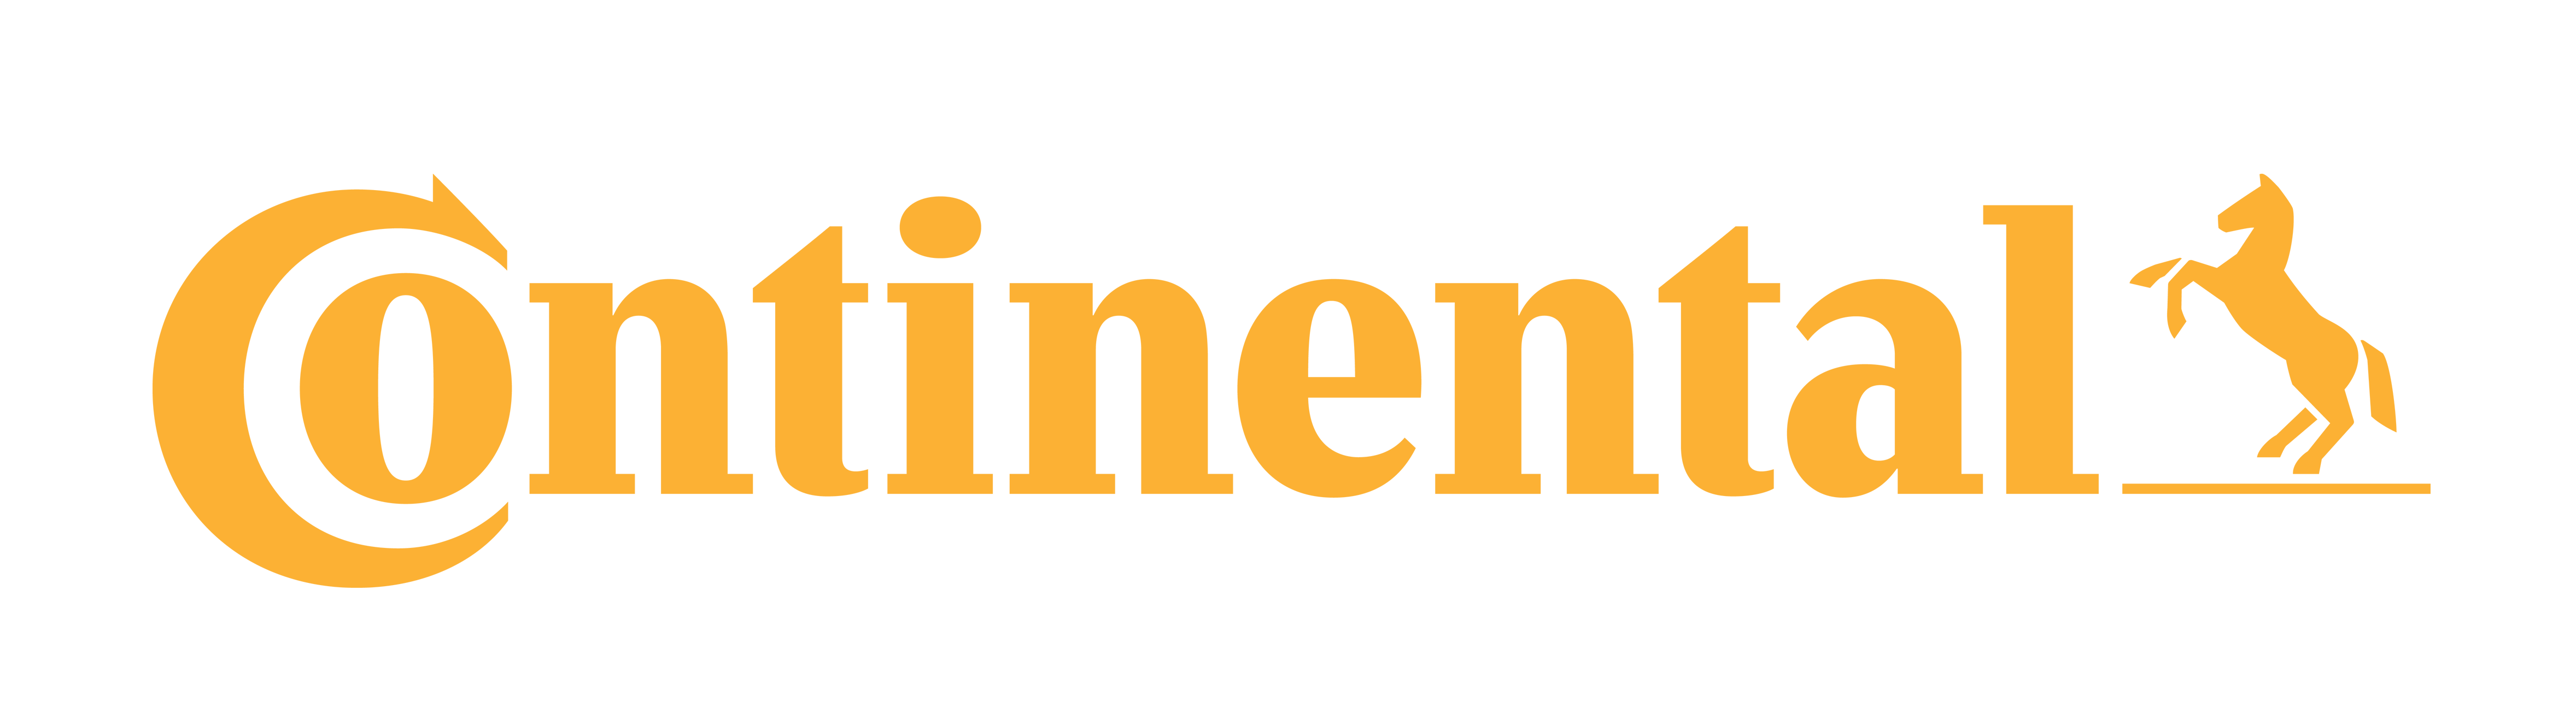 Continental – Logos Downloa